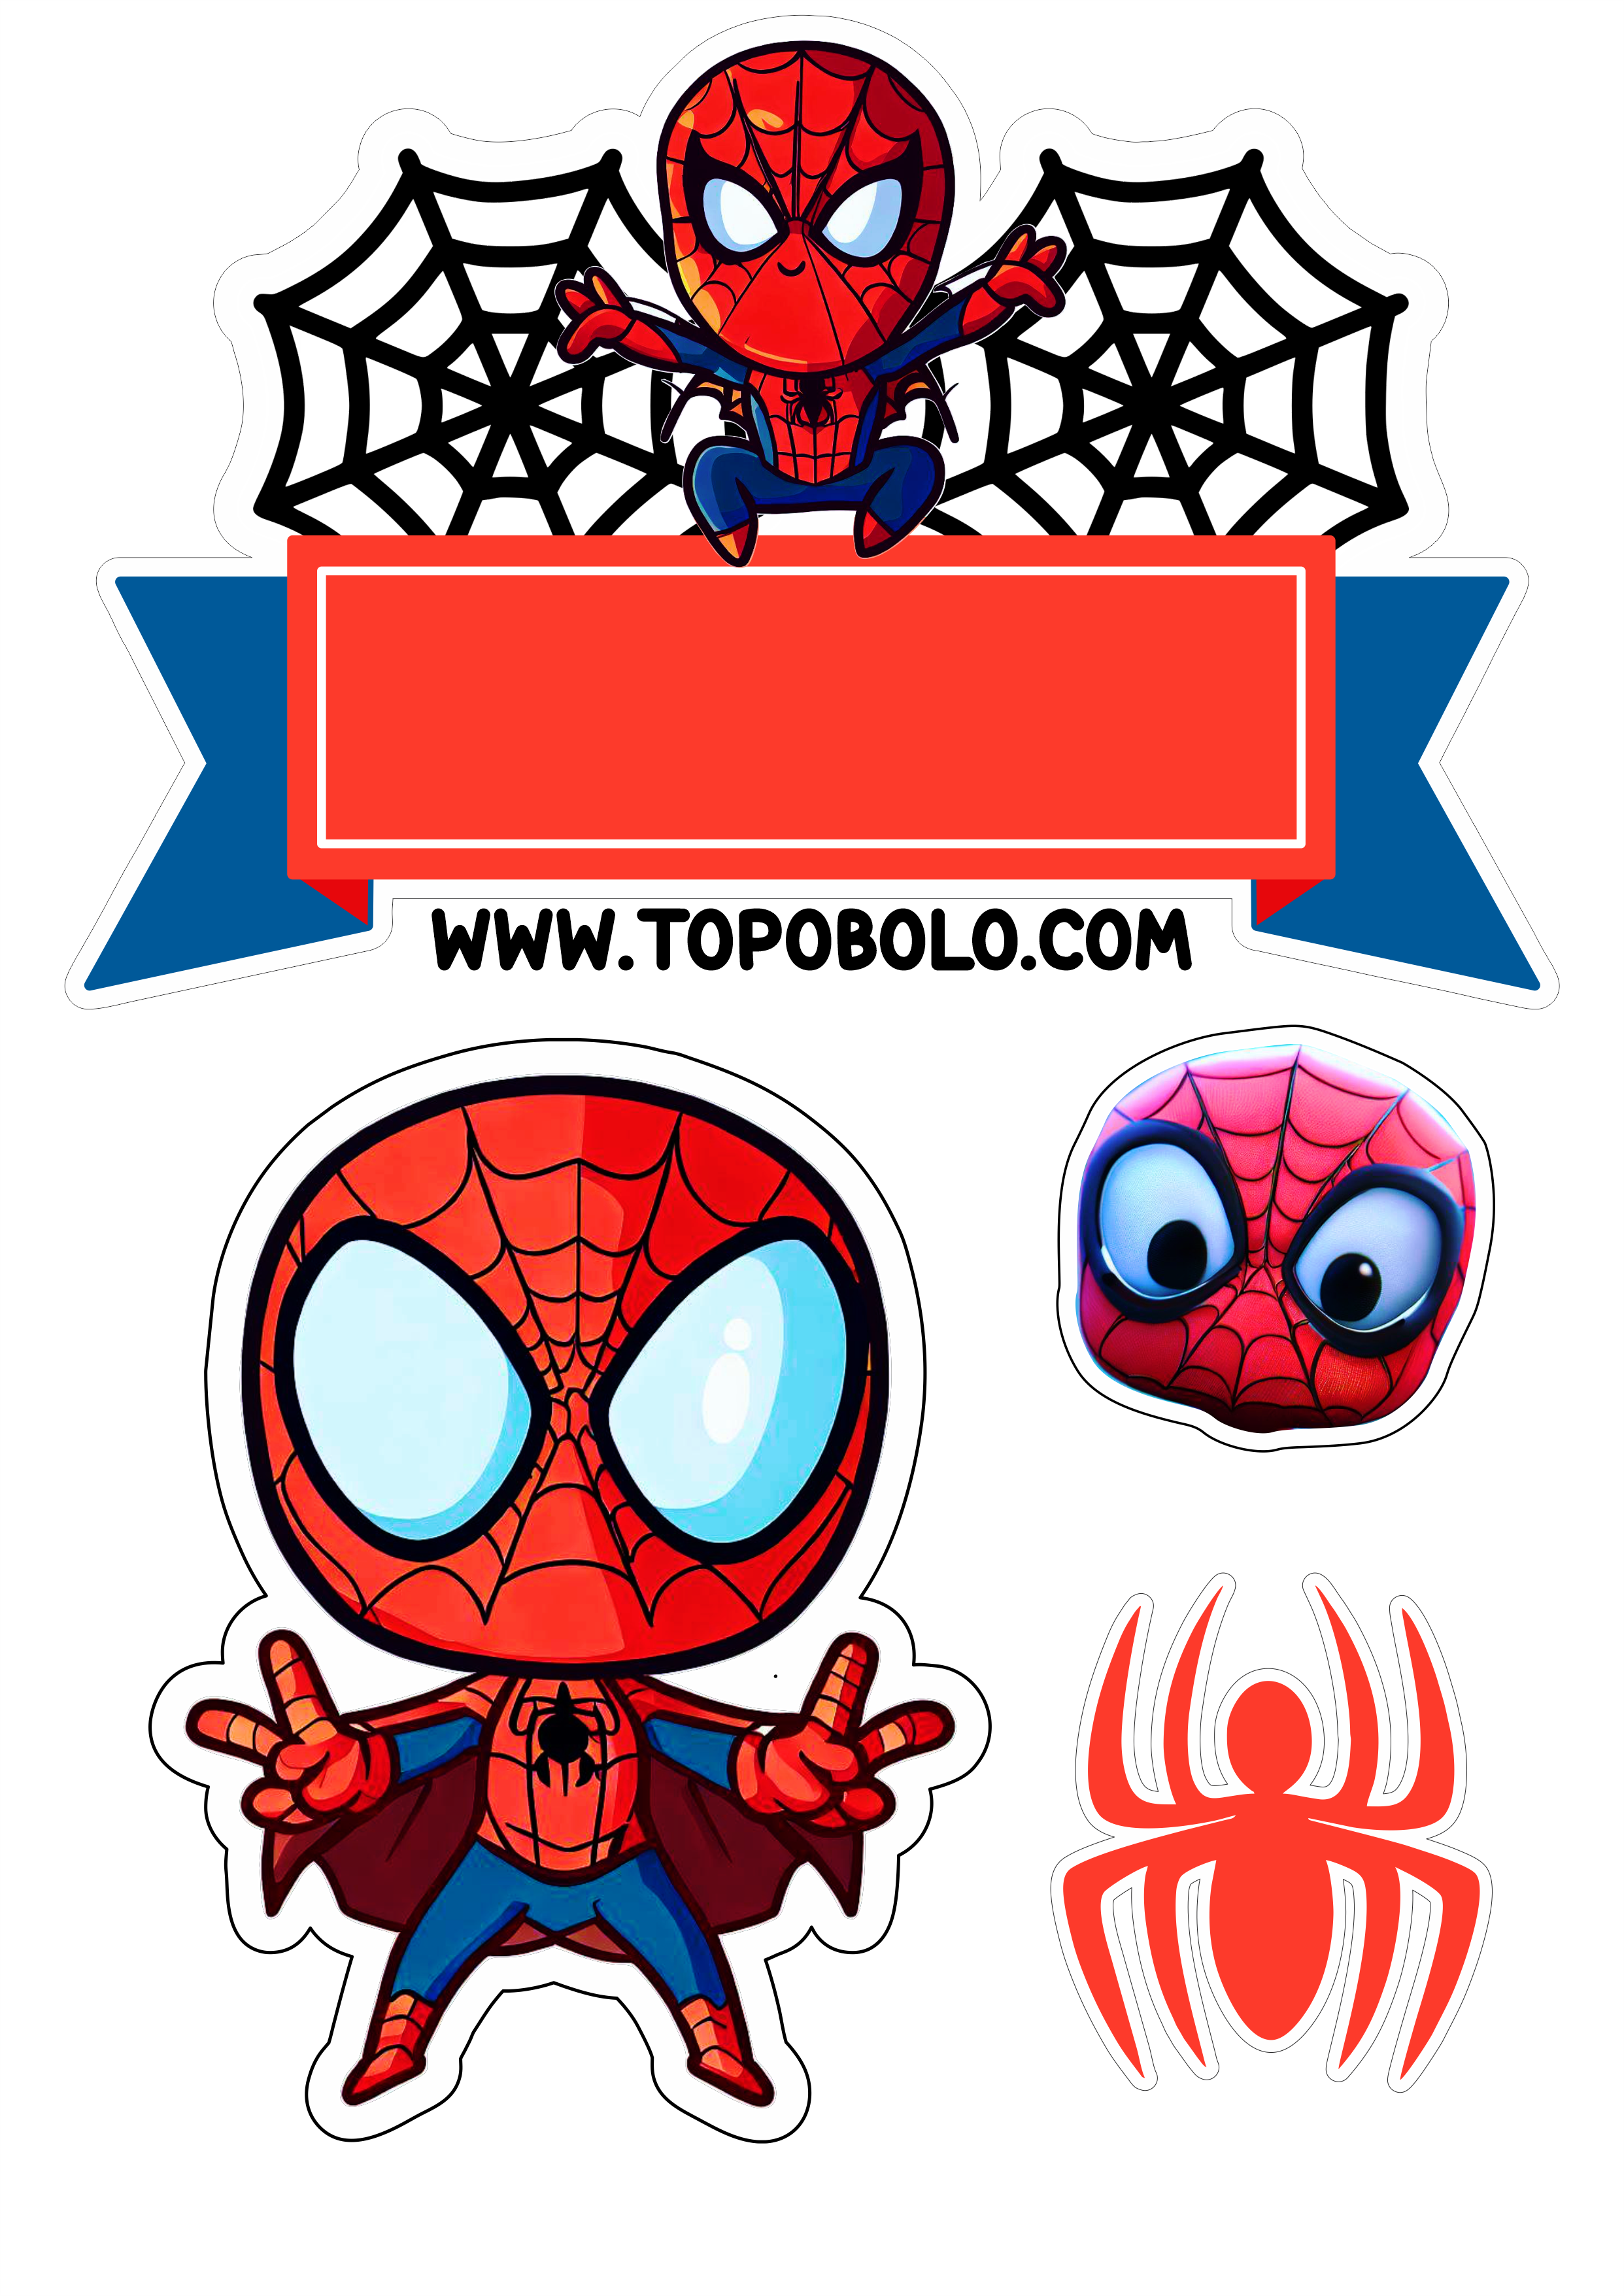 Homem-Aranha aniversário infantil Topo de bolo para imprimir Spider-Man cute chibi papelaria criativa hora da festa design png